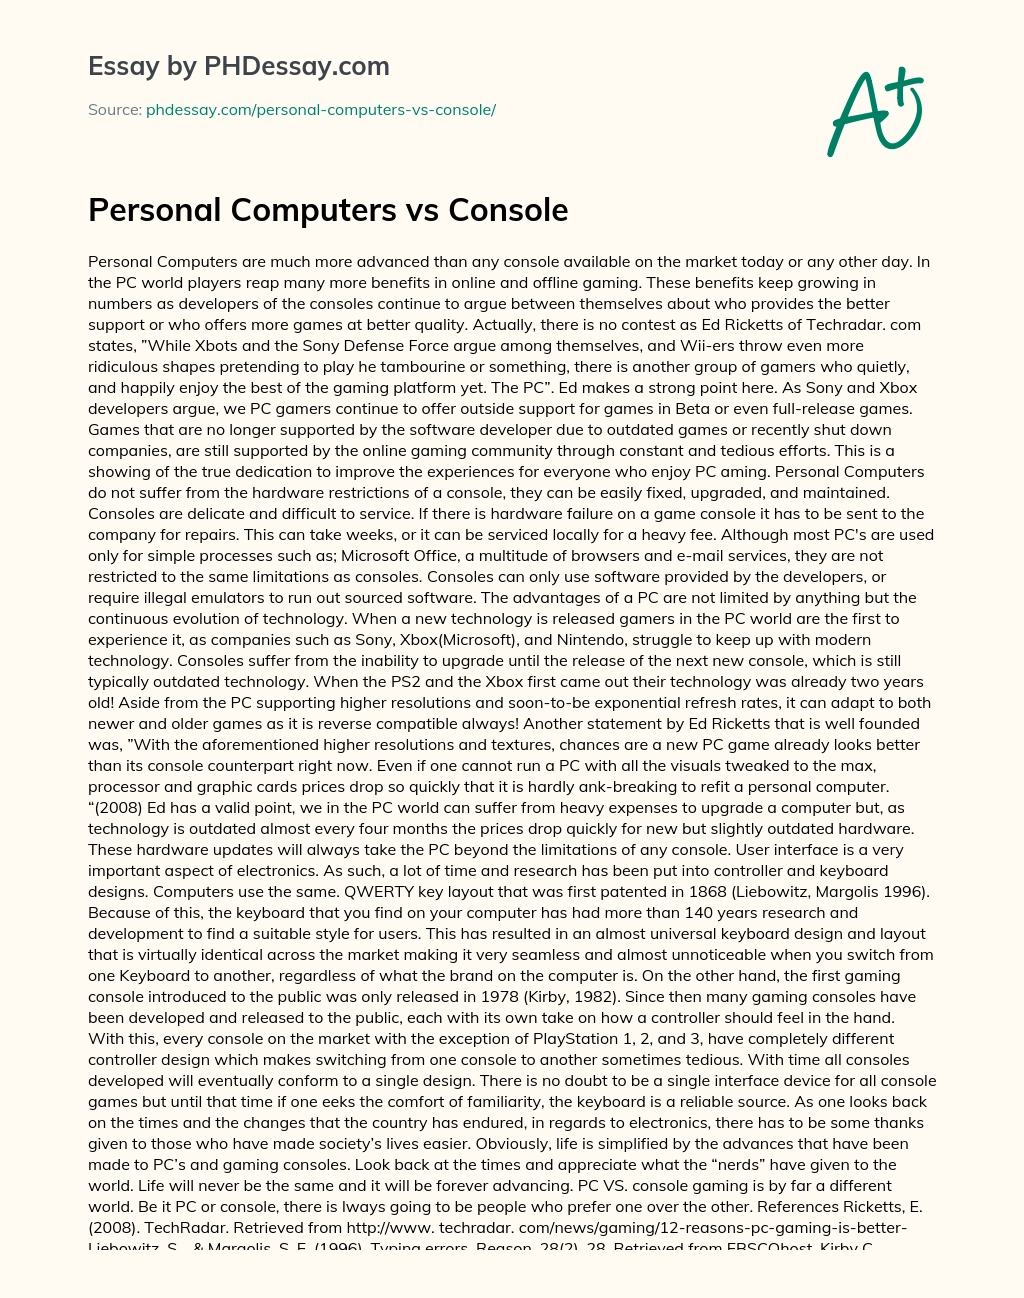 Personal Computers vs Console essay